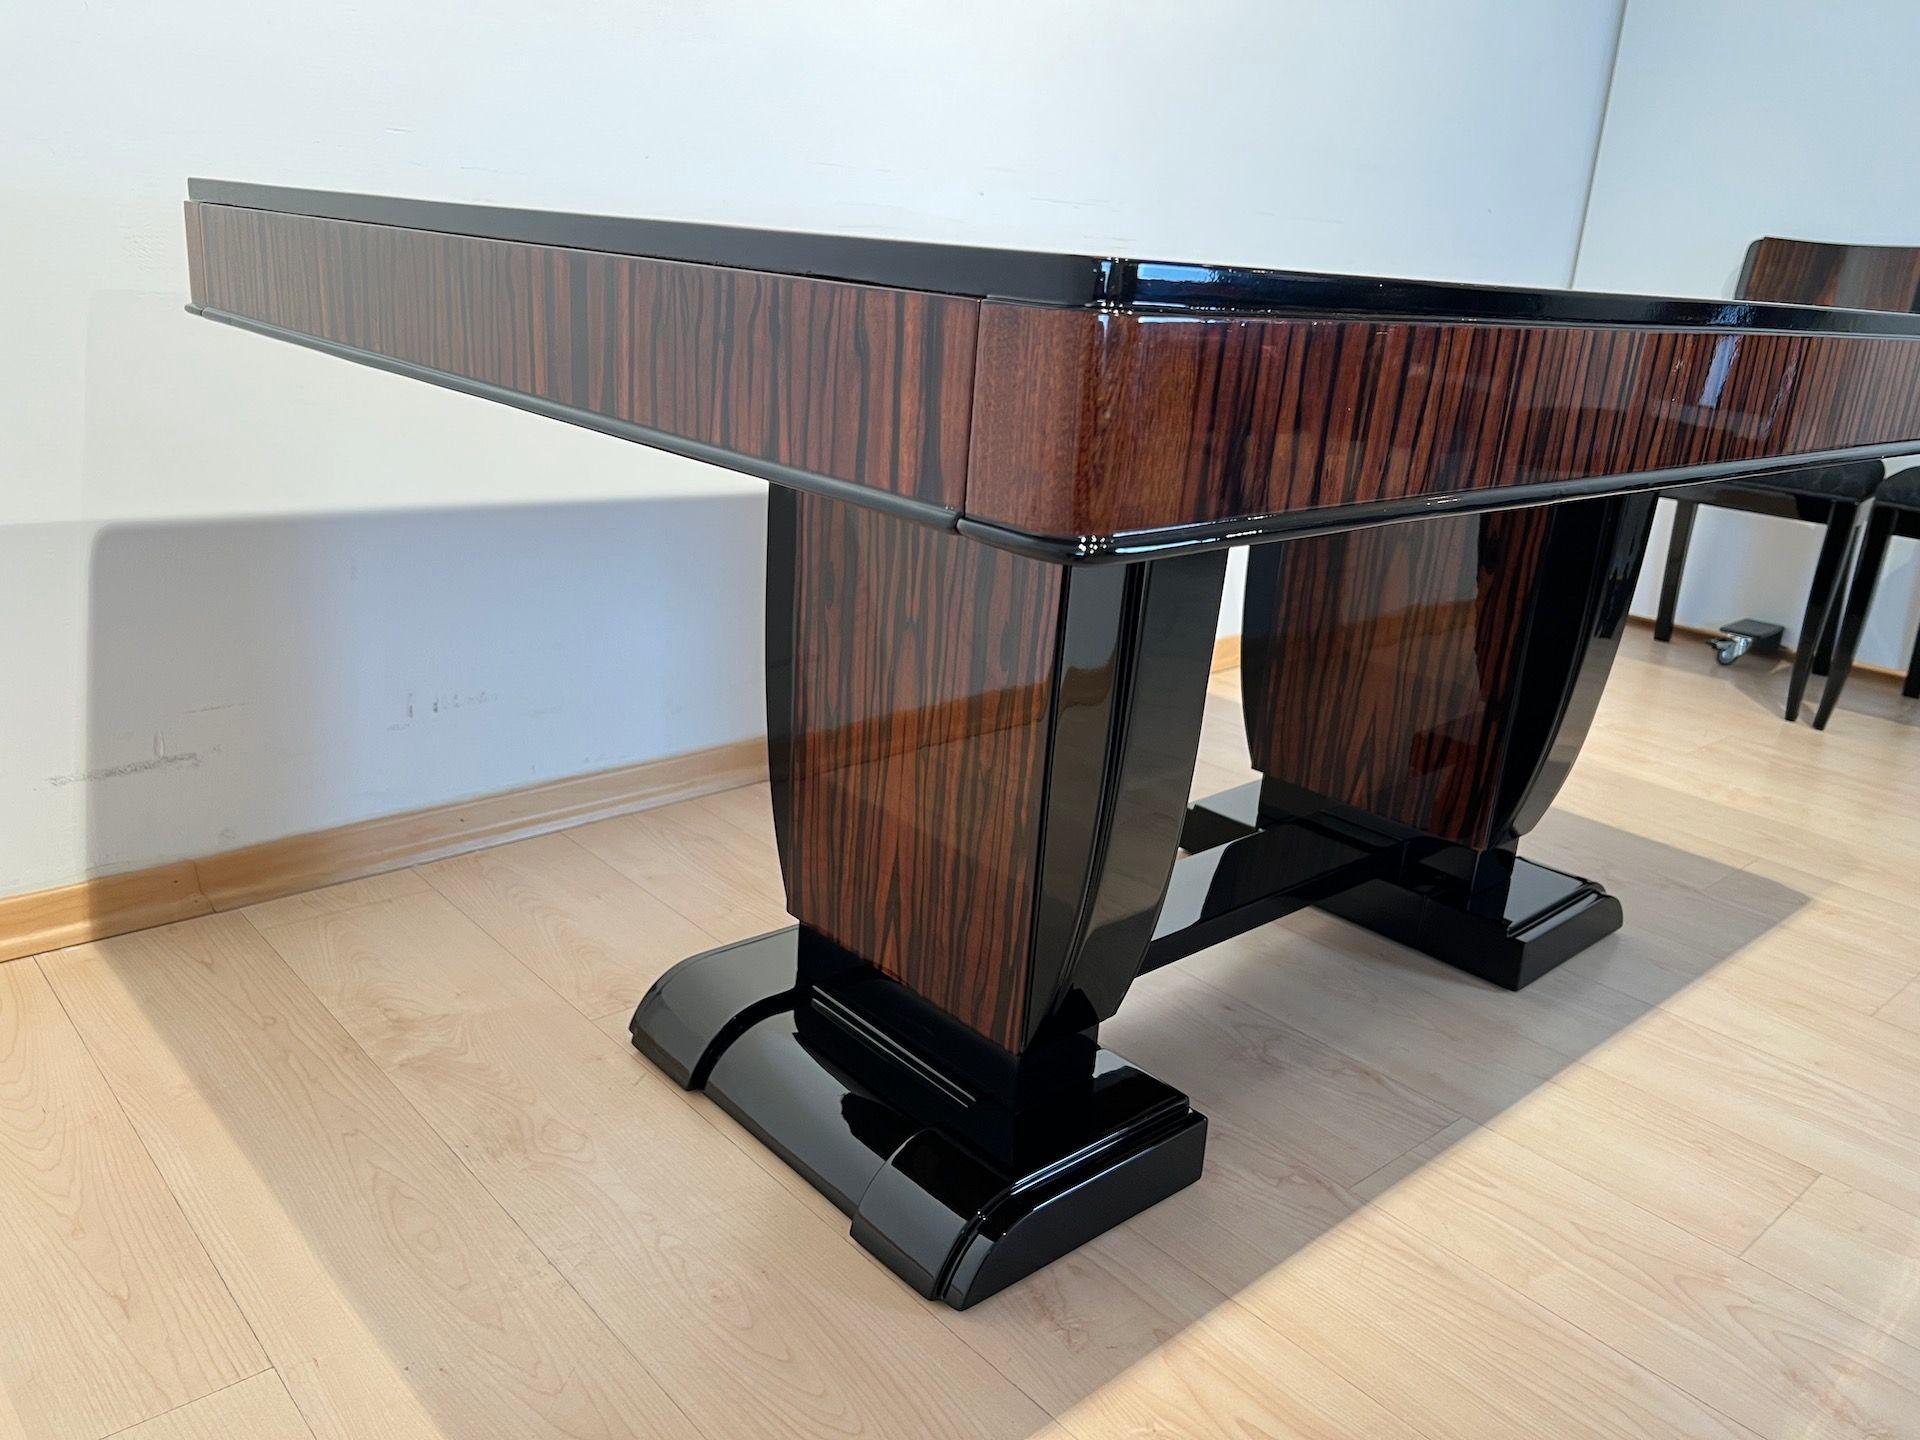 Atemberaubende Art-Deco-Esszimmergarnitur mit erweiterbarem Tisch und acht Stühlen aus Makassar-Furnier und schwarzem Lack.

Ausziehbarer Esstisch mit Platte und Schürze in hellem Makassar-Ebenholz furniert. Hochwertige